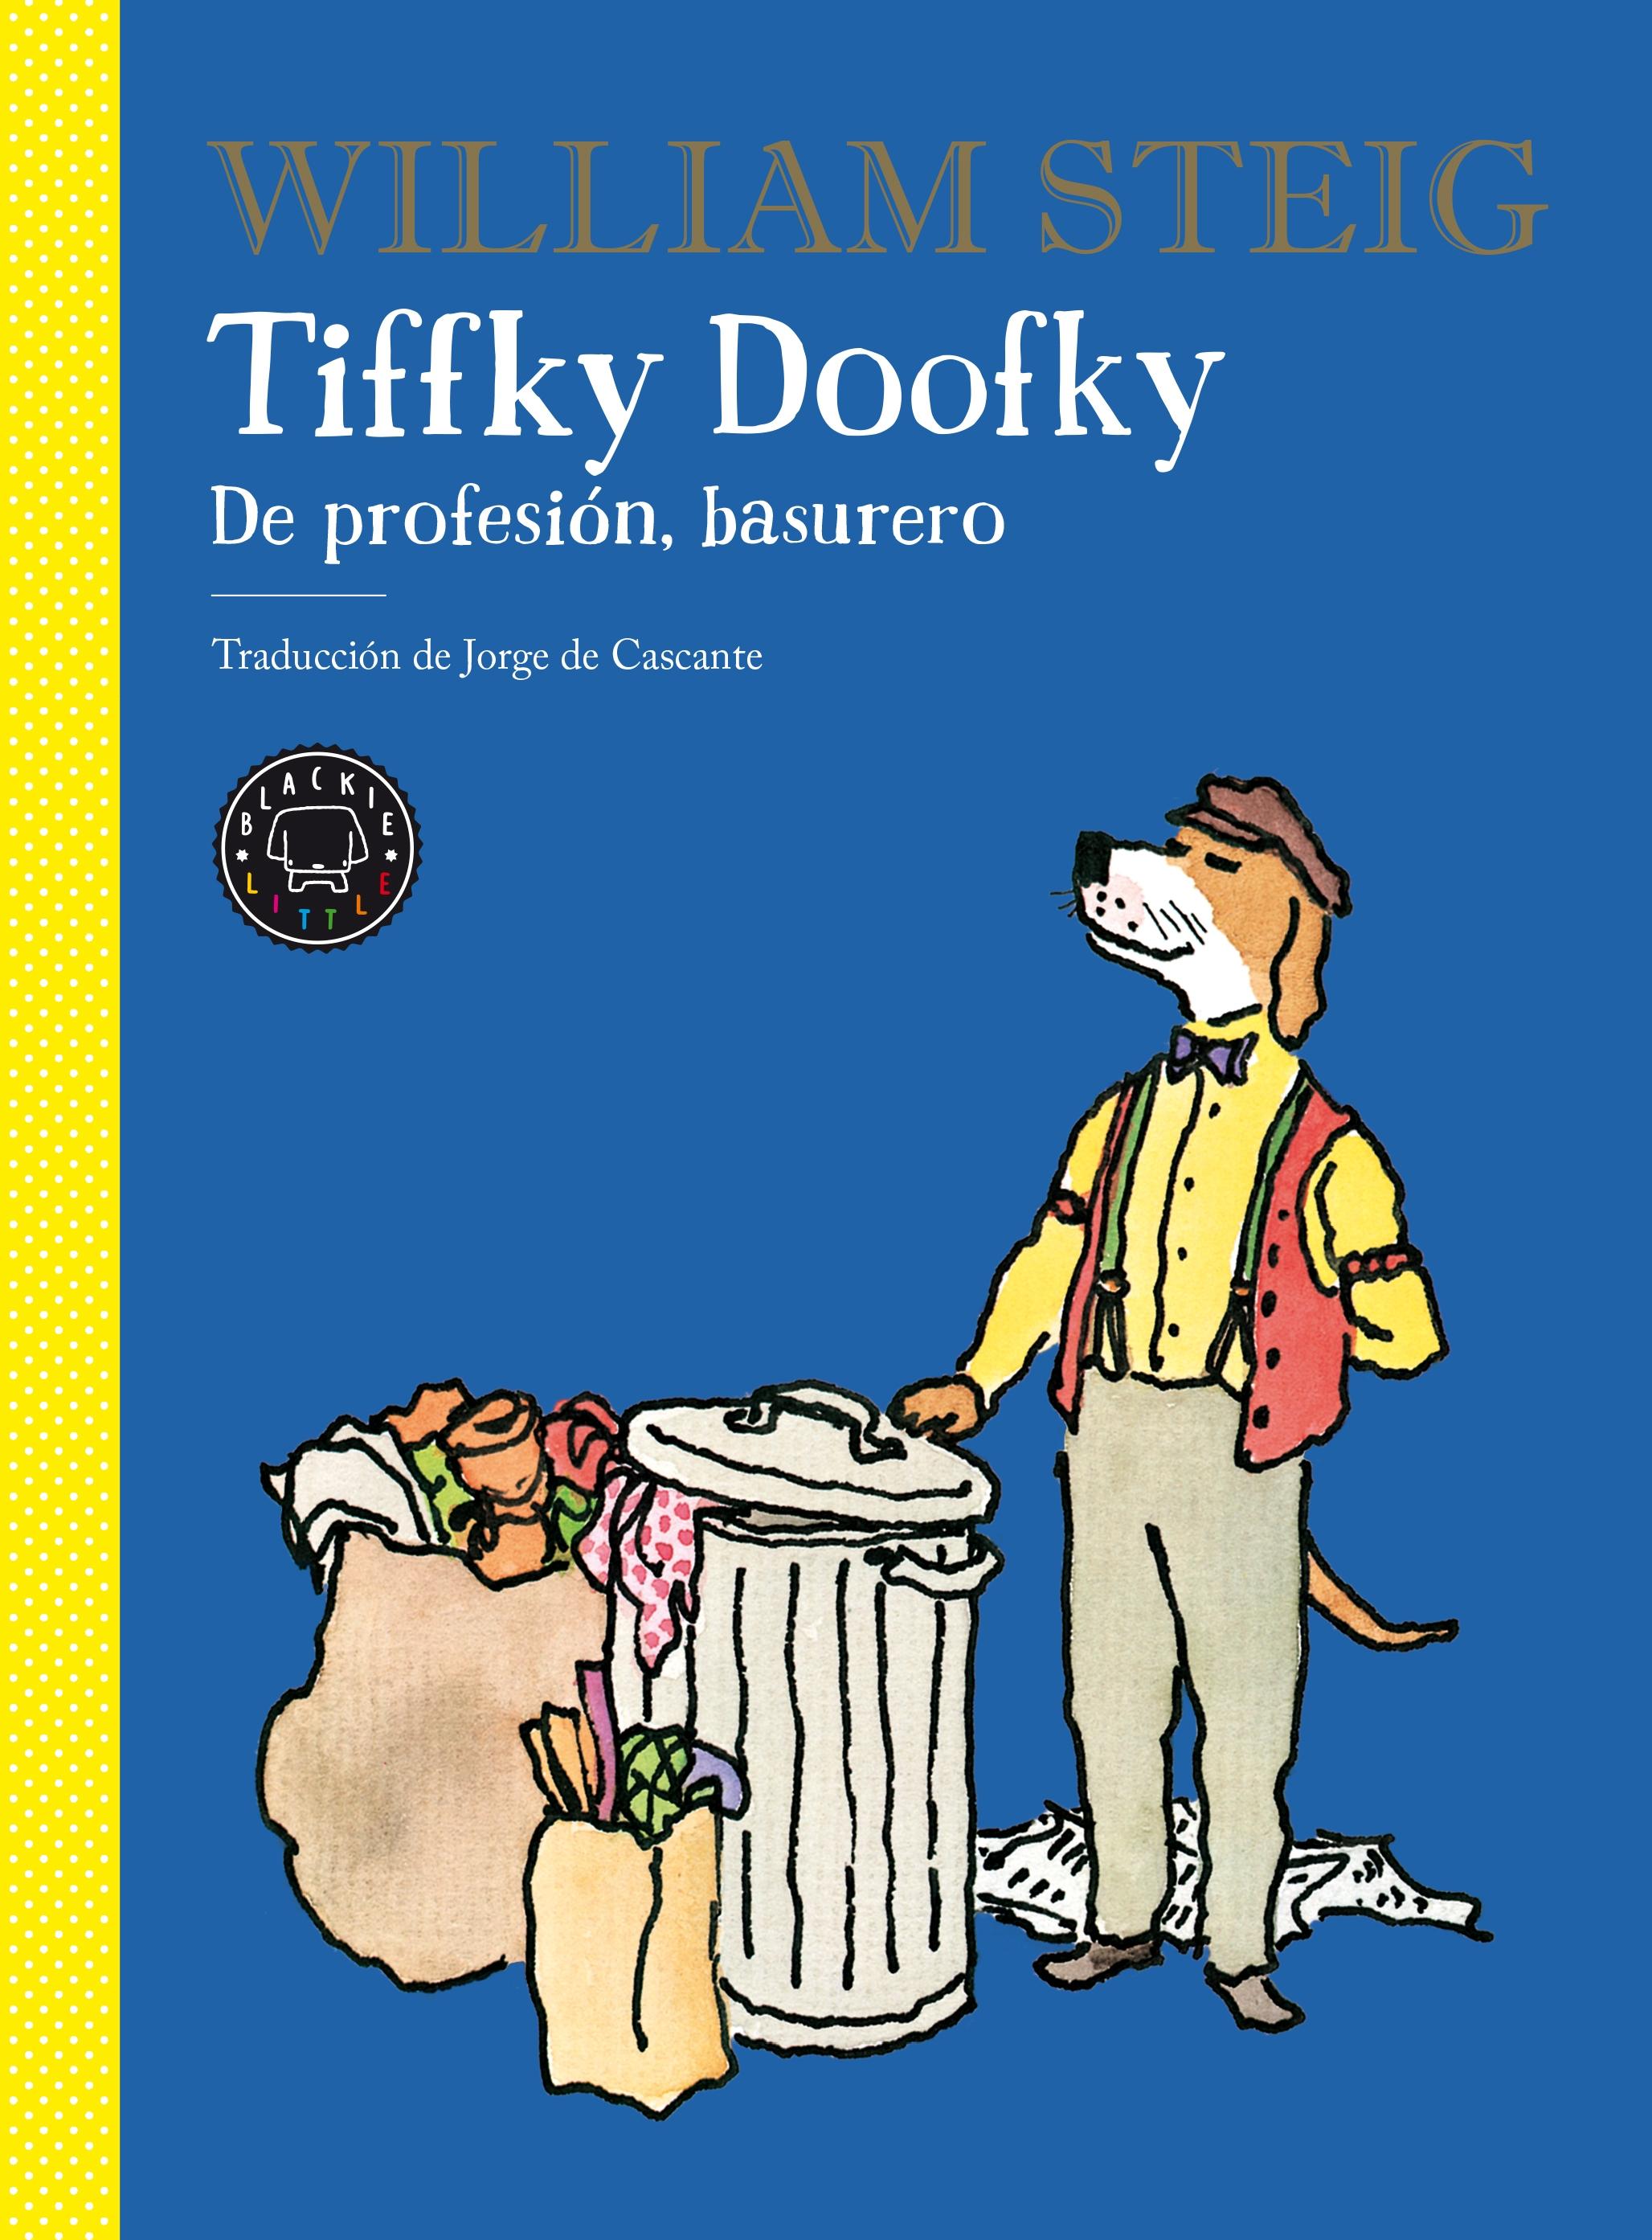 Tiffky Doofky "De profesión, basurero". 